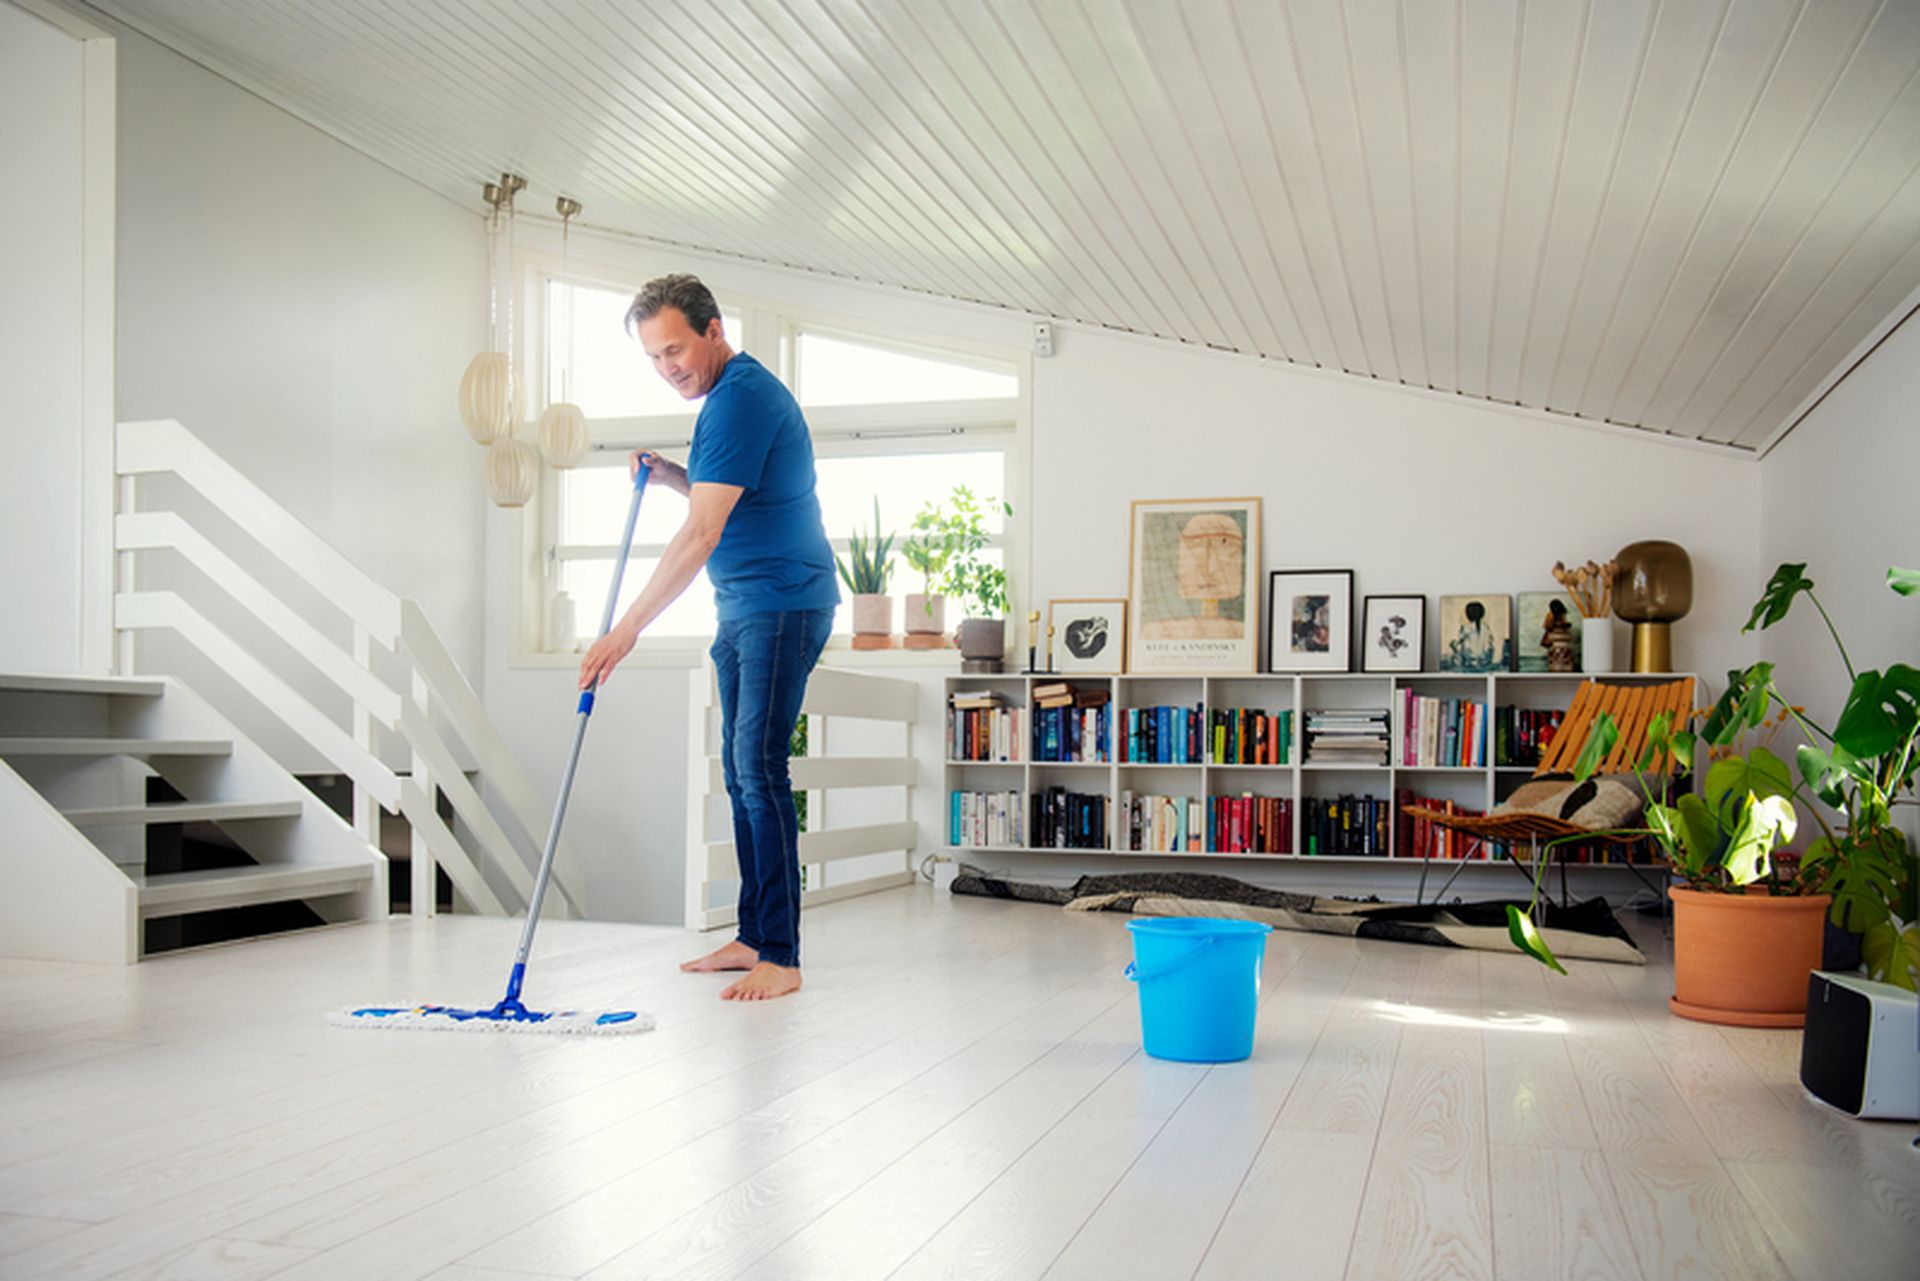 Boligselger vasker gulv før visning